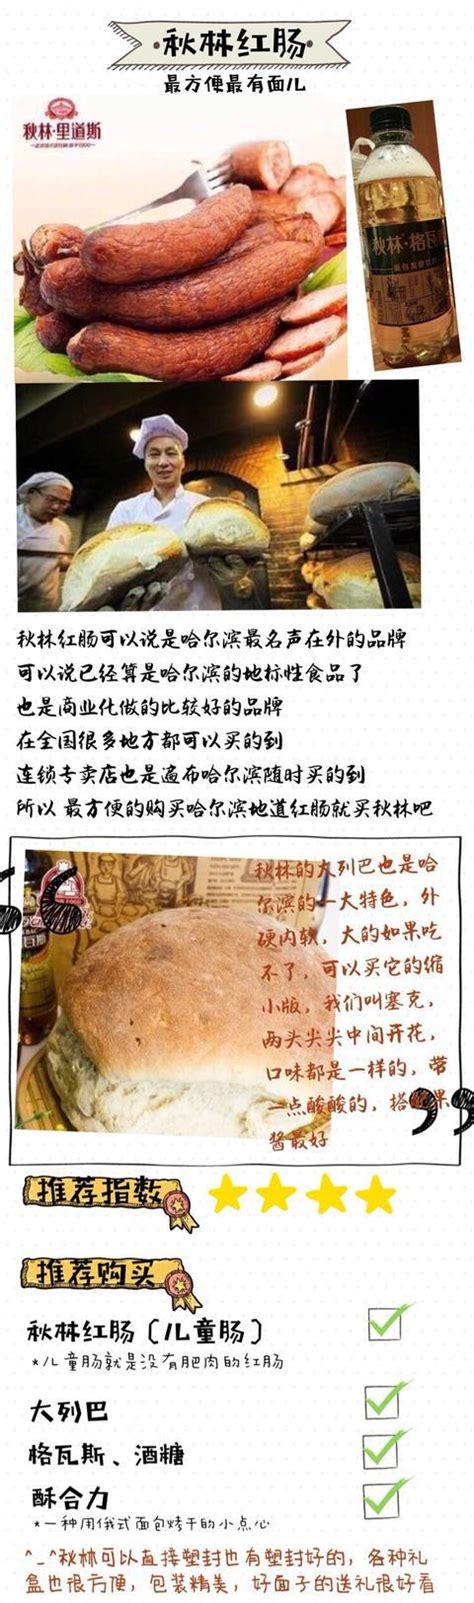 正宗商委红肠 哈尔滨有名红肠猪肉肠东北特产当天新鲜拍3袋装包邮-淘宝网